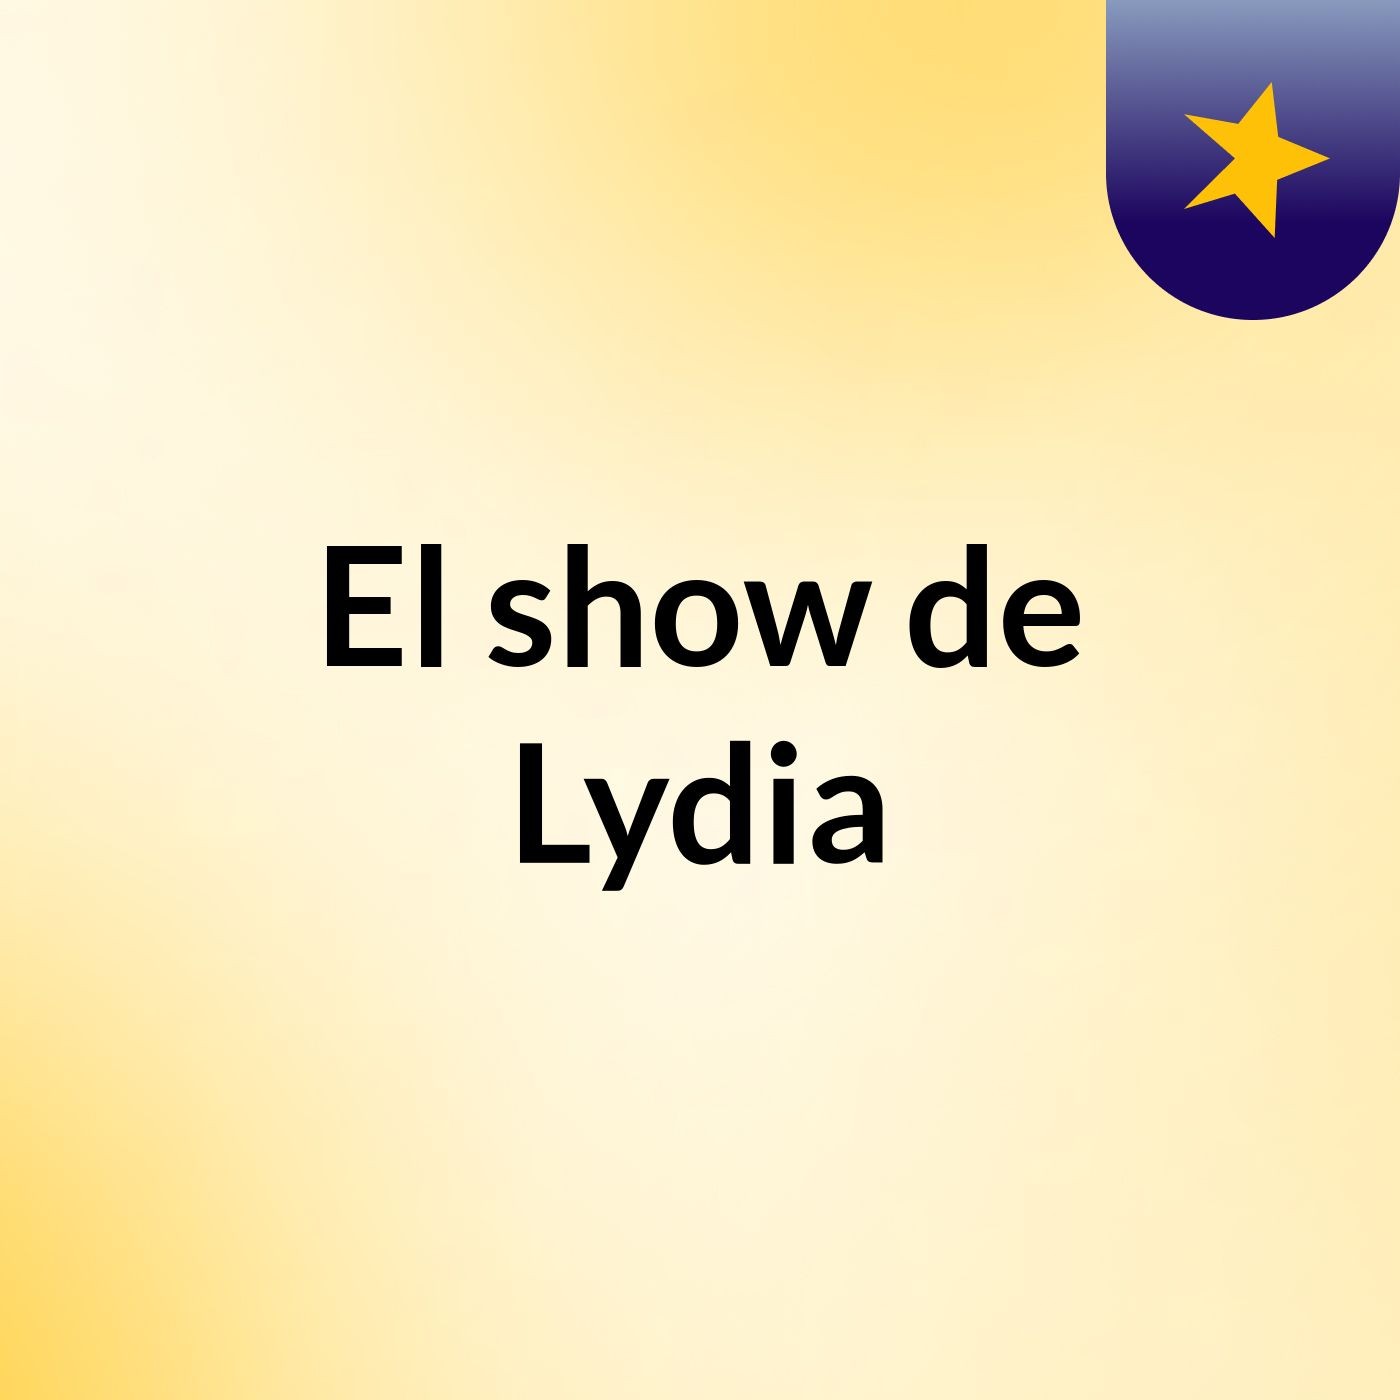 El show de Lydia